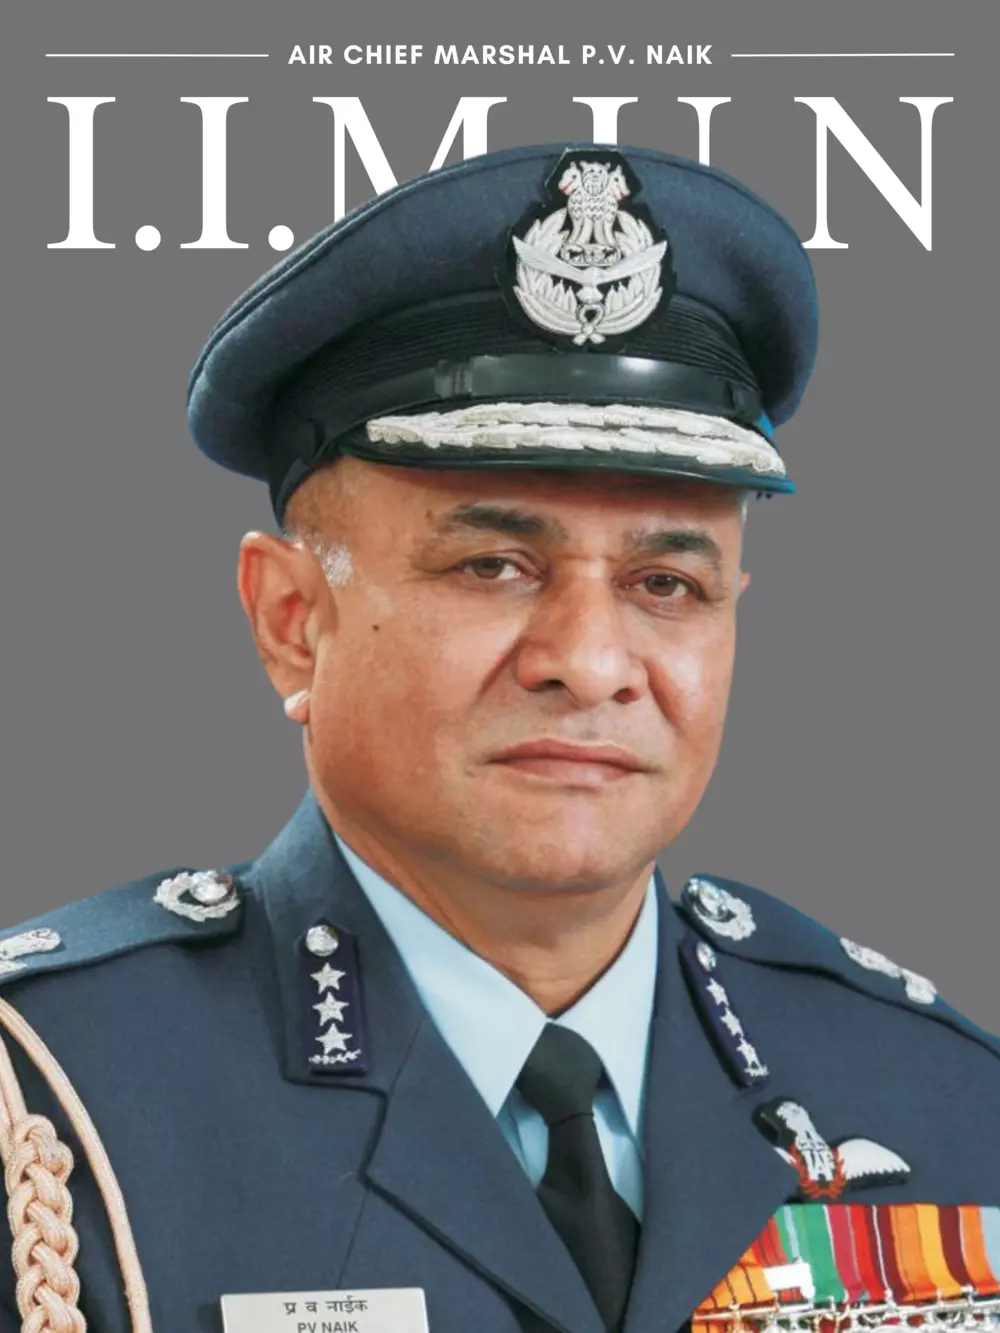 Air Chief Marshal P. V. Naik